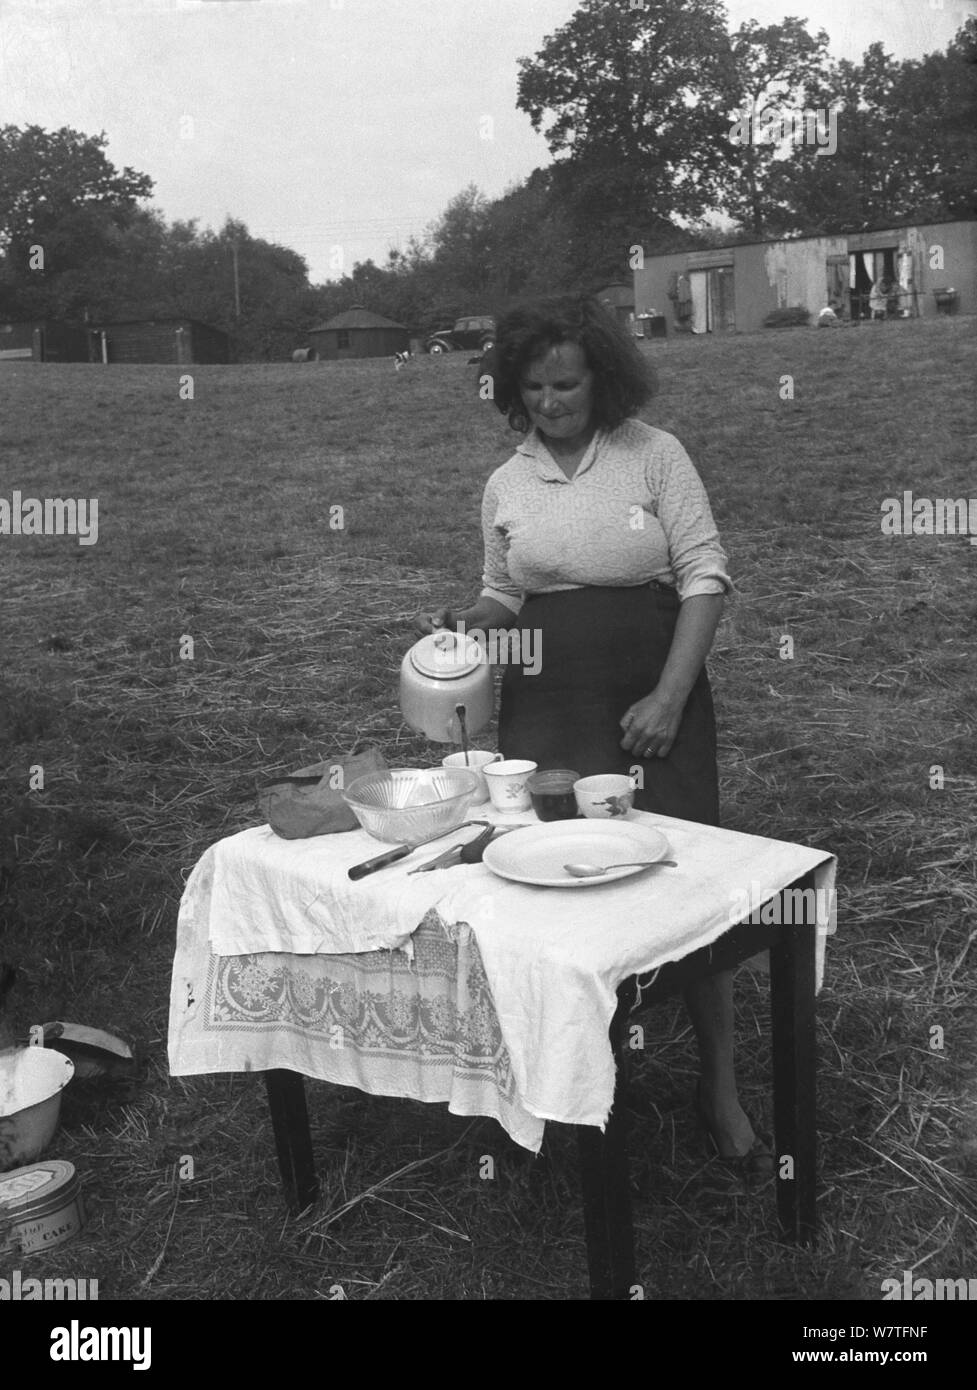 1951, historische, eine Dame landwirtschaftliche Arbeiter, ein hop Picker in einem Feld außerhalb ihrer Quartiere, genannt "Hopper Hütten", um einen kleinen Tisch mit einer Teekanne zu einer Tasse Kaffee und einem Snack, Kent, England, UK. Das Hopper Hütten in der Ferne sehen aus Wellblech gemacht wurden (Stahl) und waren die Unterkünfte für die Arbeiter woking in die Felder ein. Stockfoto